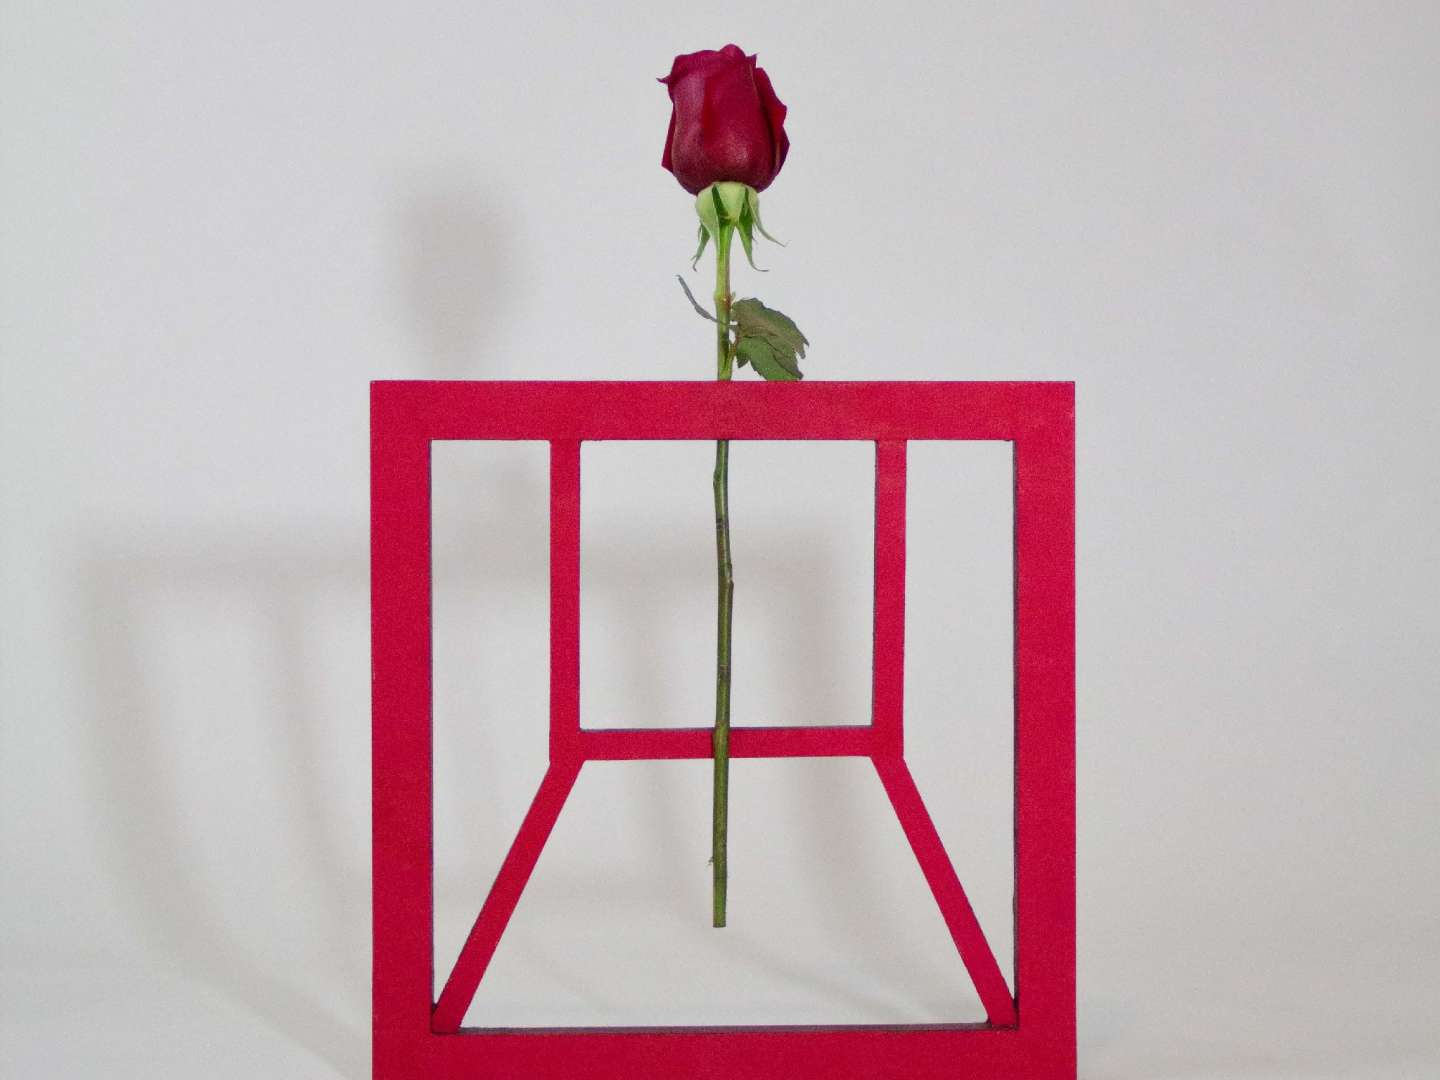 Single flower vase